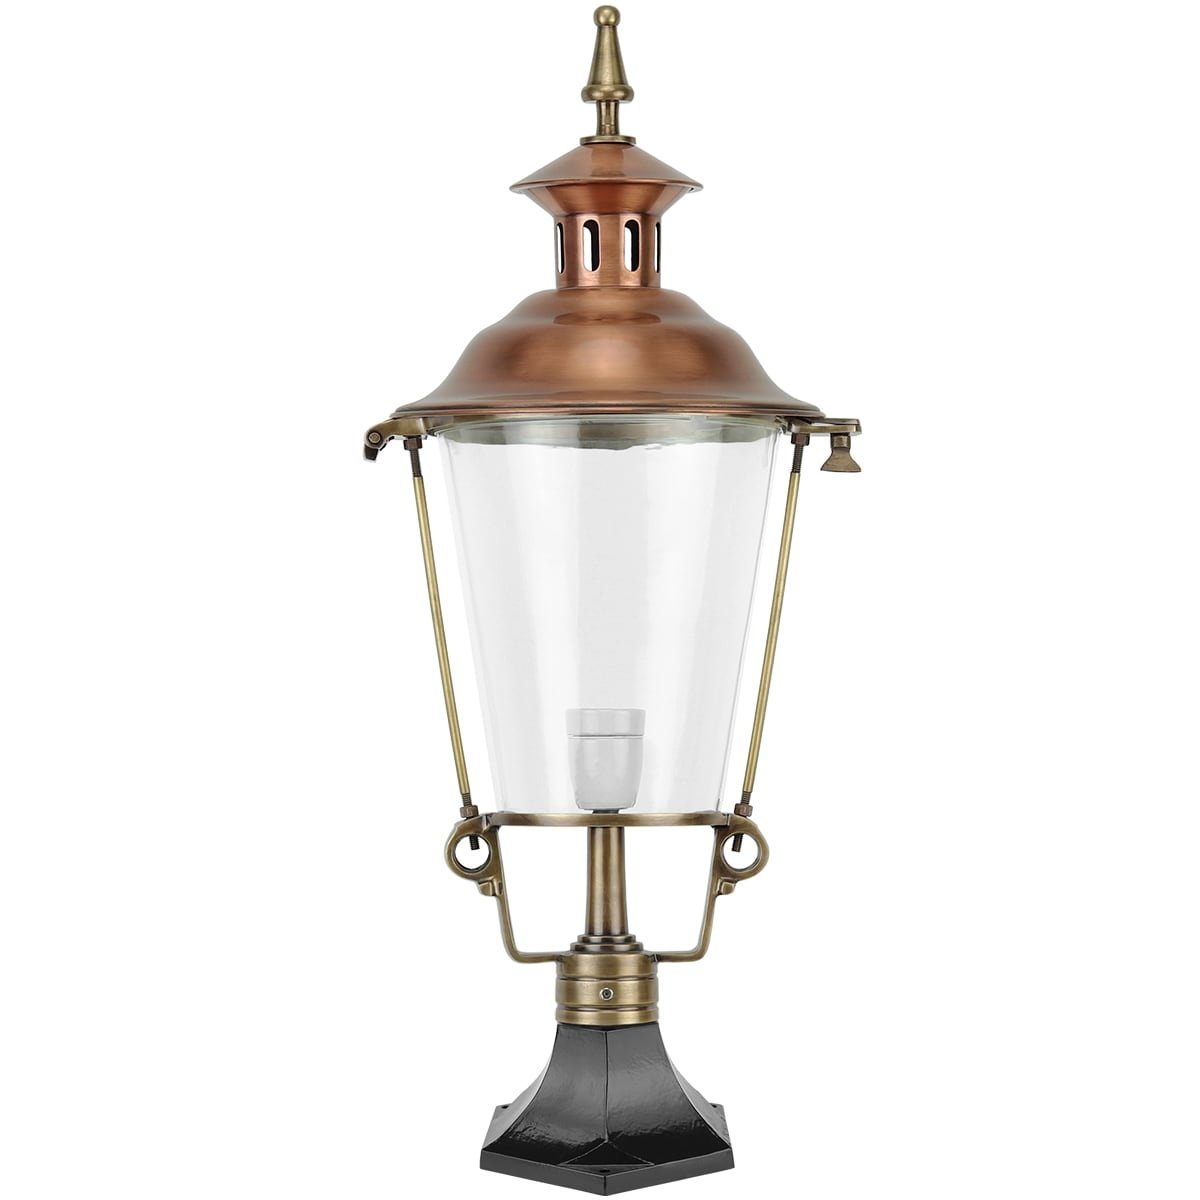 Lampe d'ambiance cuivre De Vecht - 70 cm